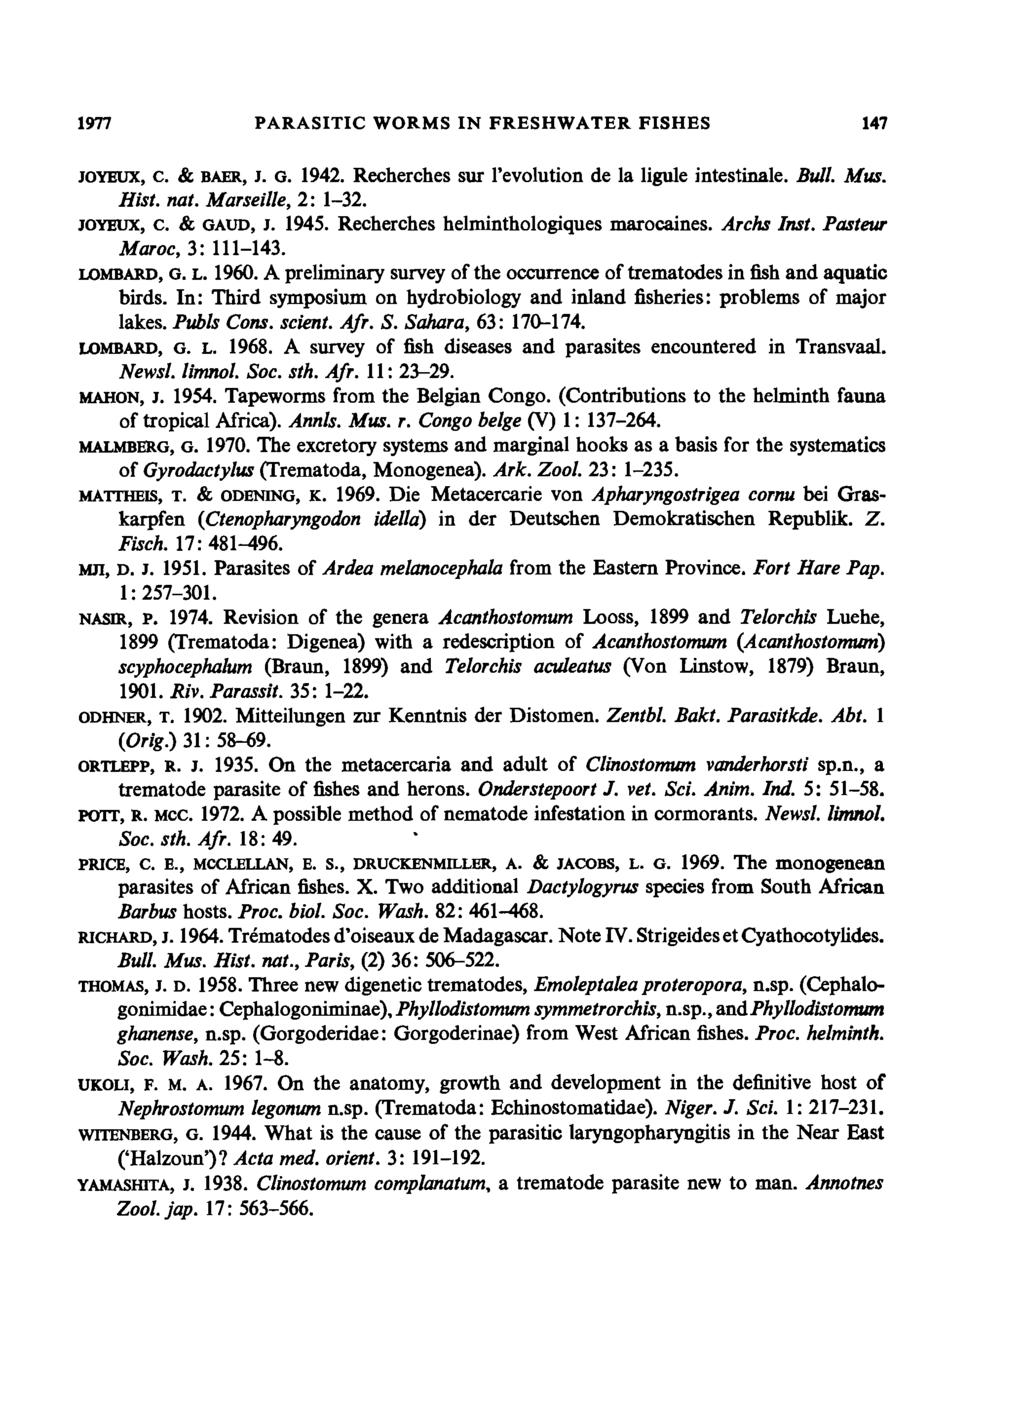 1m PARASITIC WORMS IN FRESHWATER FISHES 147 JOYEUX, c. & BAER, J. G. 1942. Recherches sur revolution de Ia ligule intestinale. Bull. Mus. Hist. nat. Marseille, 2: 1-32. JOYEUX, c. & GAUD, J. 1945.